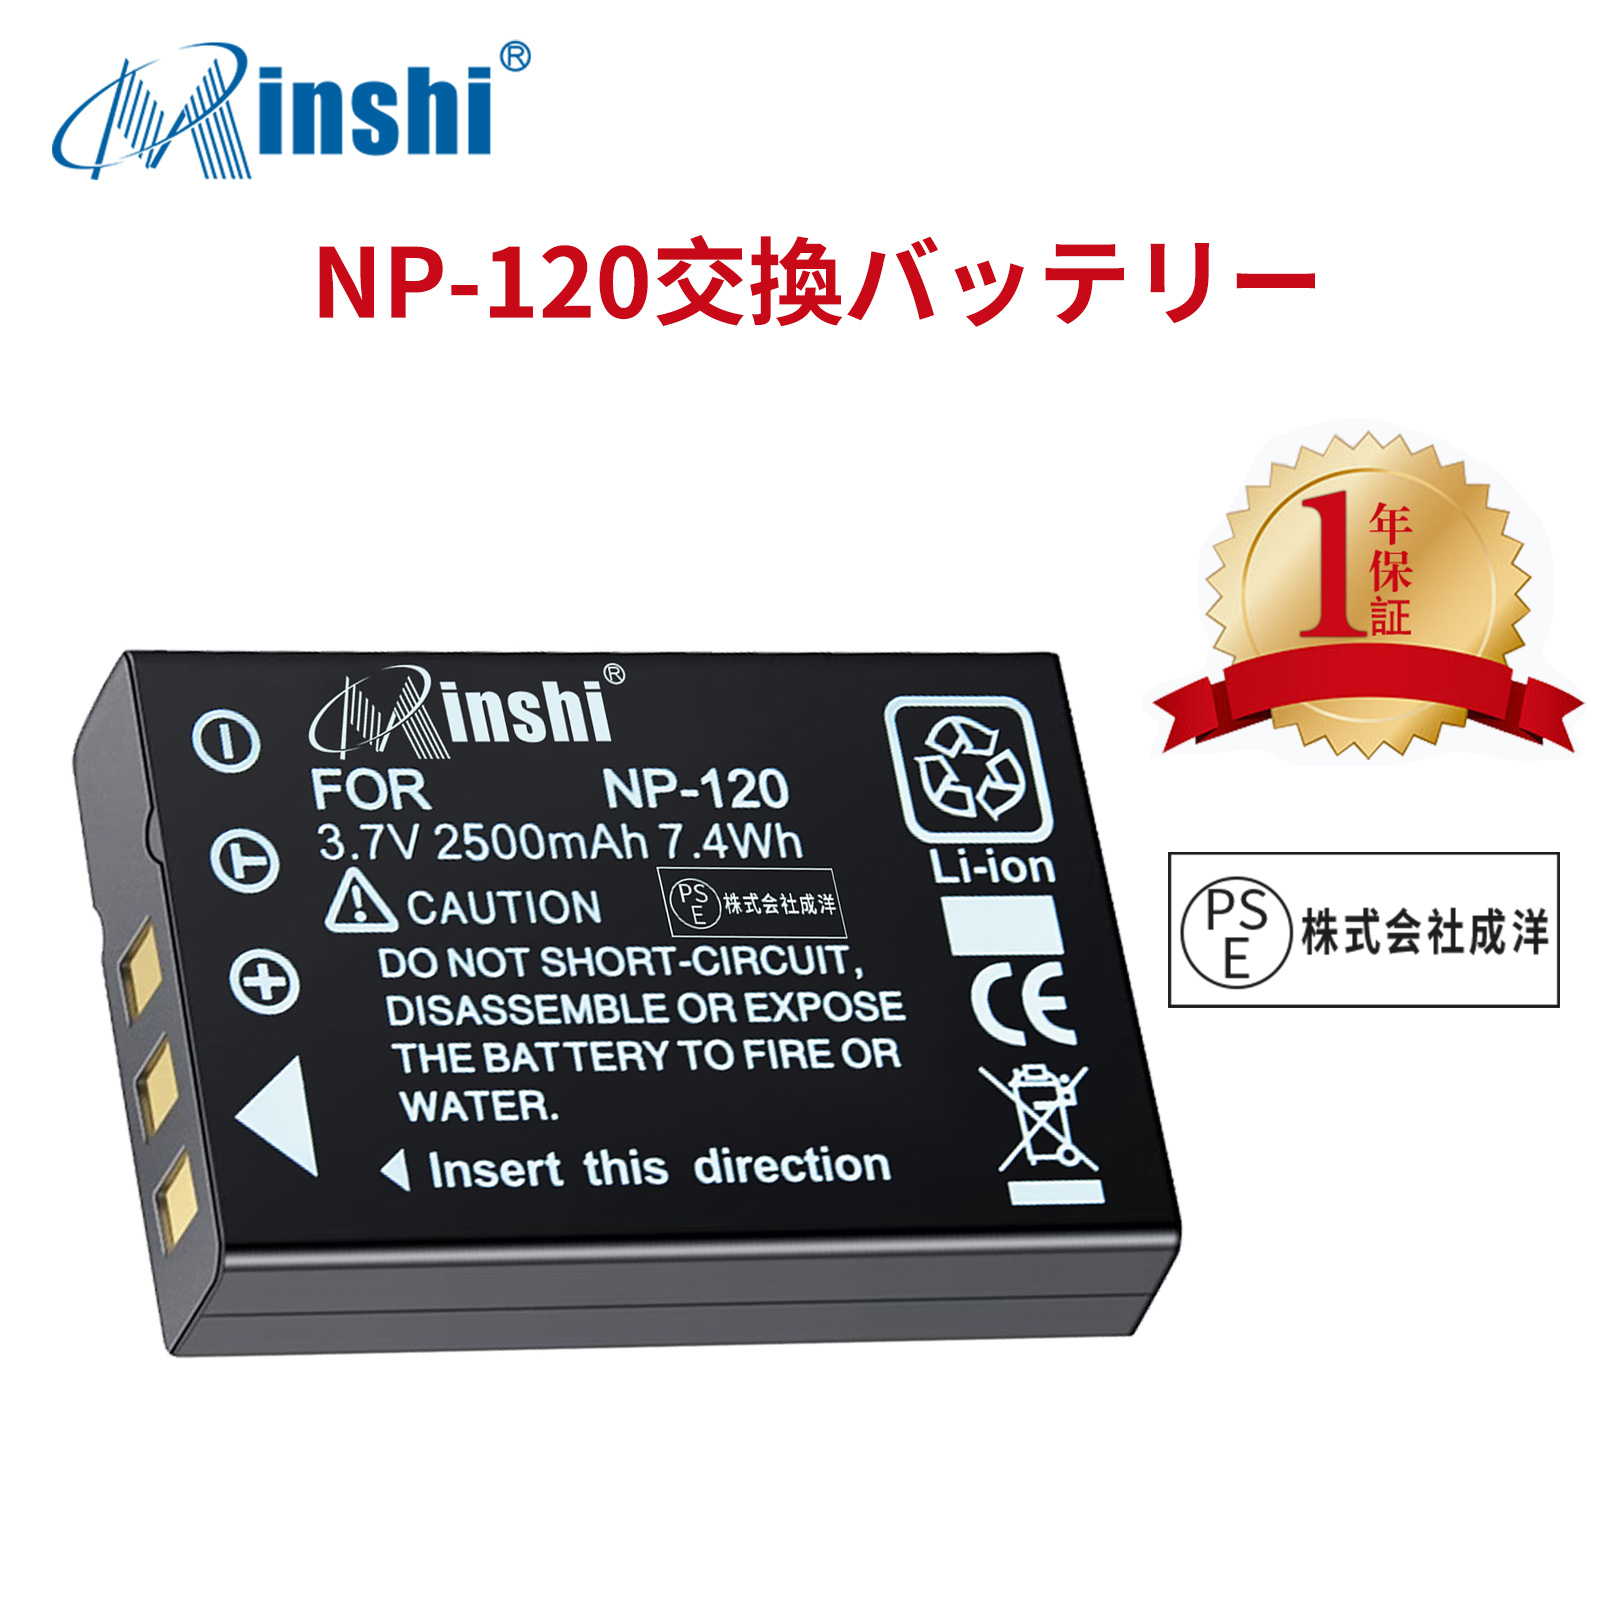 【1年保証】minshi FUJIFILM Caplio GX DB-43 【2500mAh 3.7V】PSE認定済 高品質交換用バッテリー